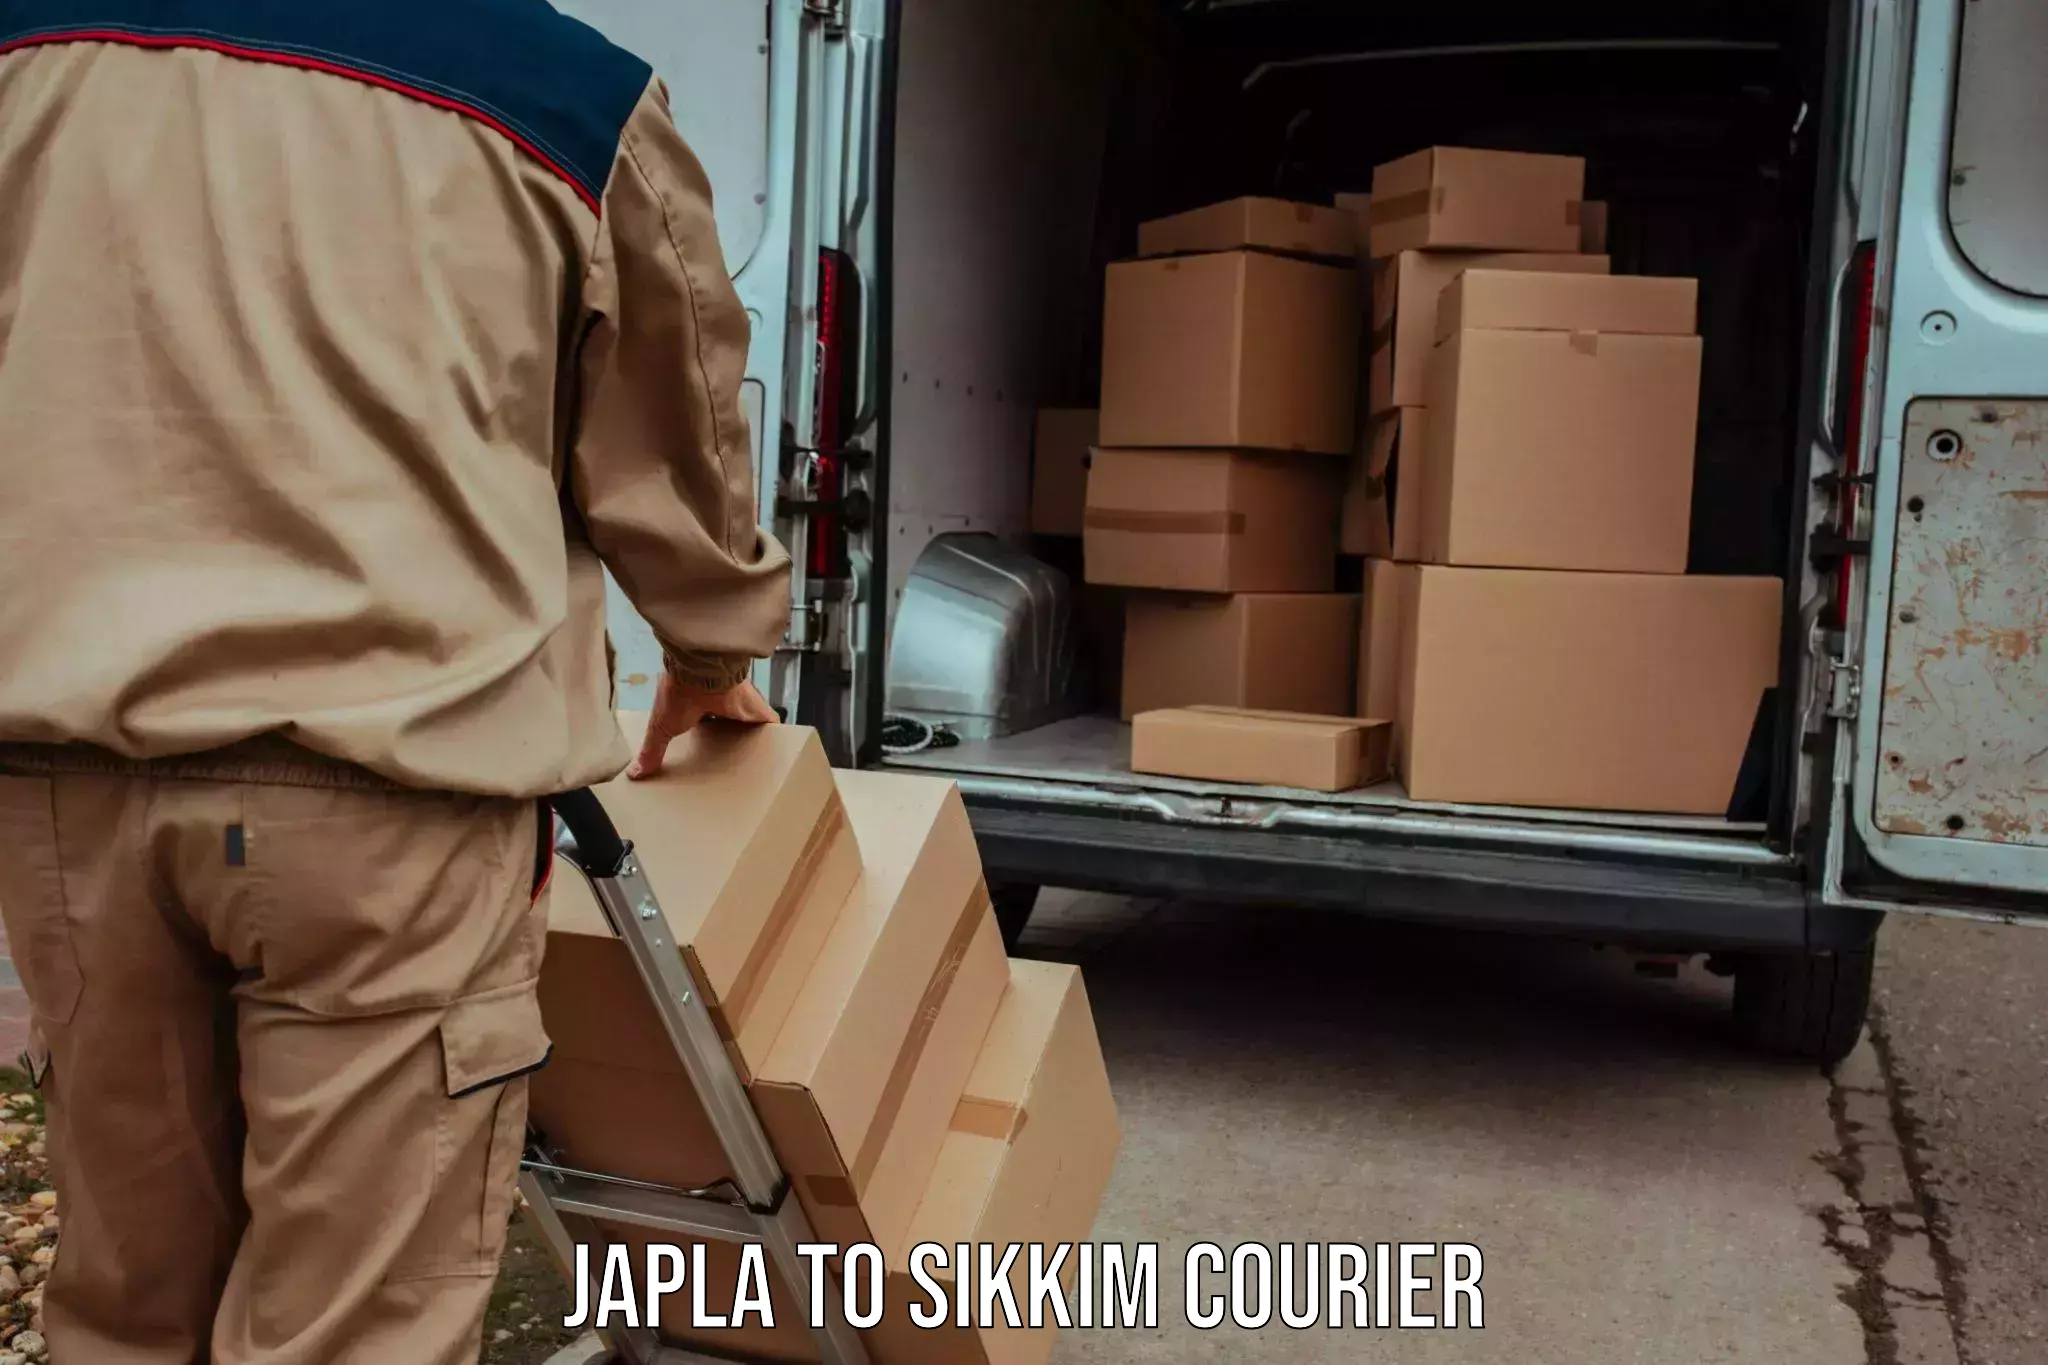 Efficient parcel service Japla to Sikkim